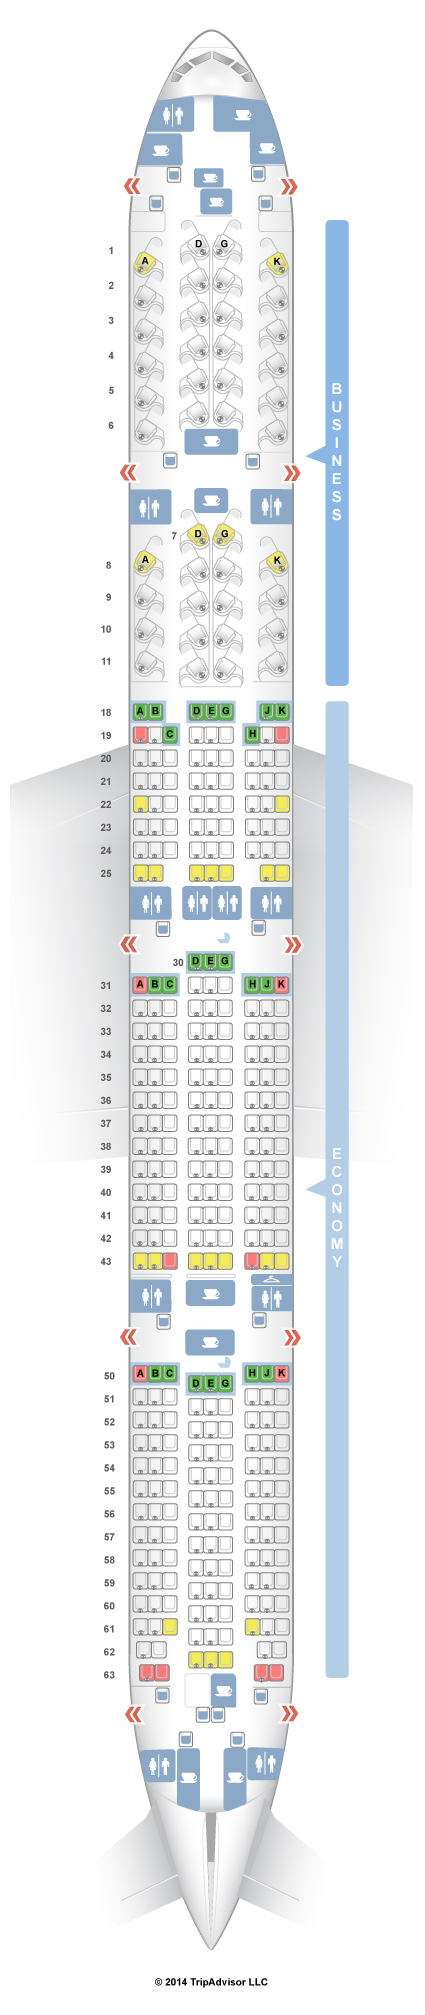 Uic Seating Chart